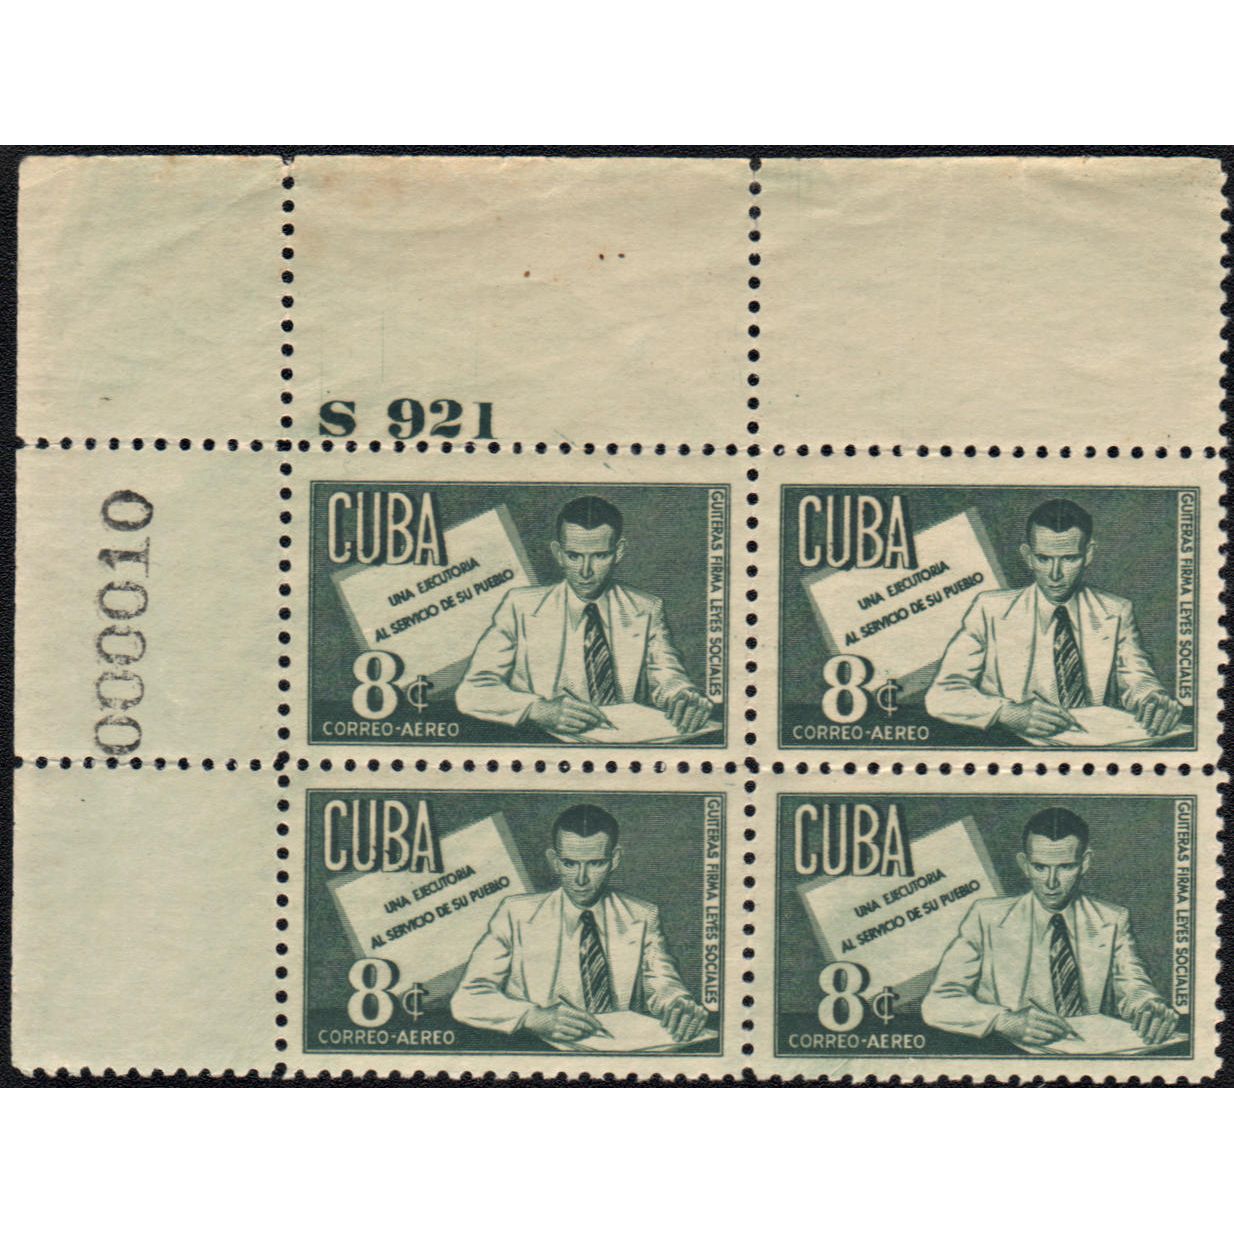 al green postage stamp